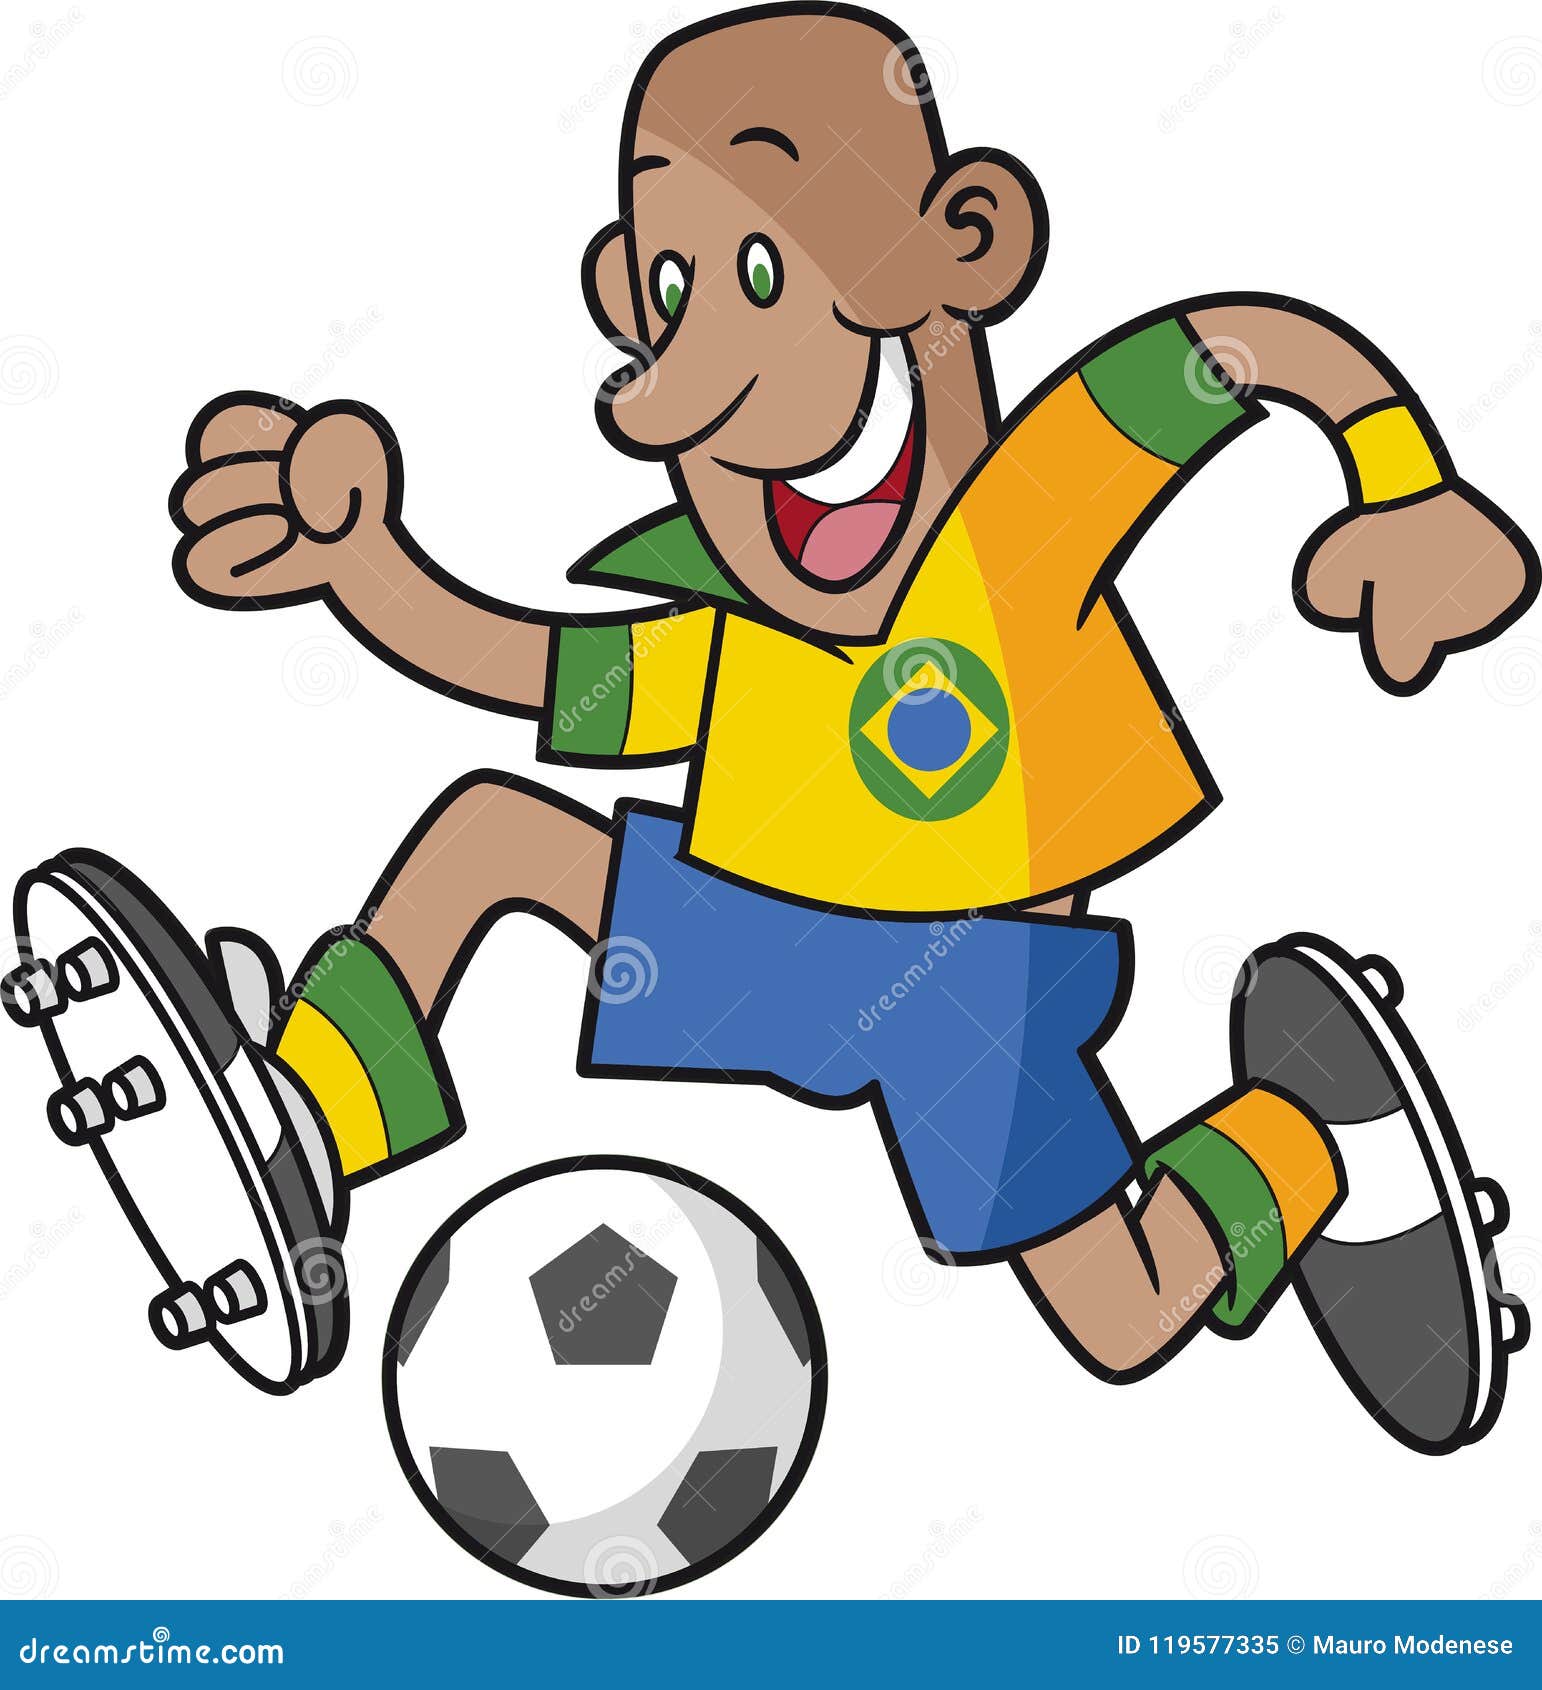 Brazil Cartoon Soccer Player Stock Illustration - Illustration of uniform,  cartoon: 119577335